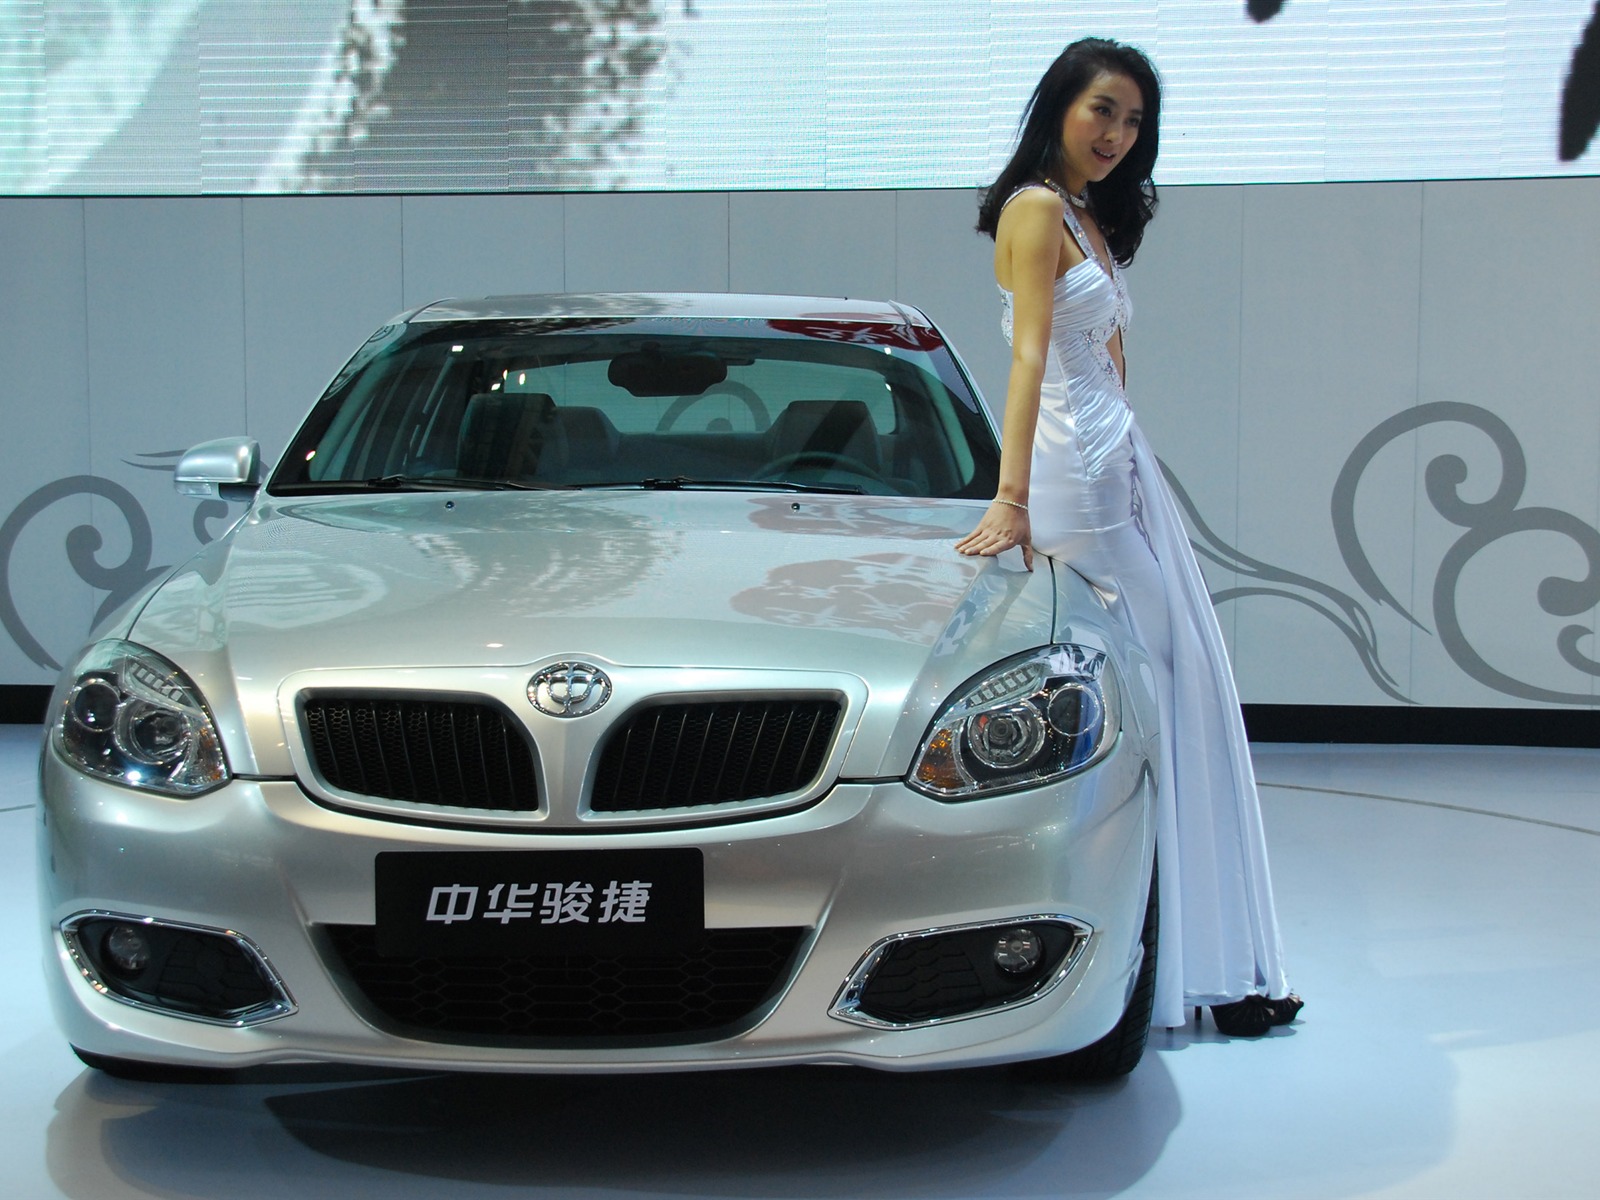 2010 Beijing International Auto Show (1) (z321x123 works) #19 - 1600x1200